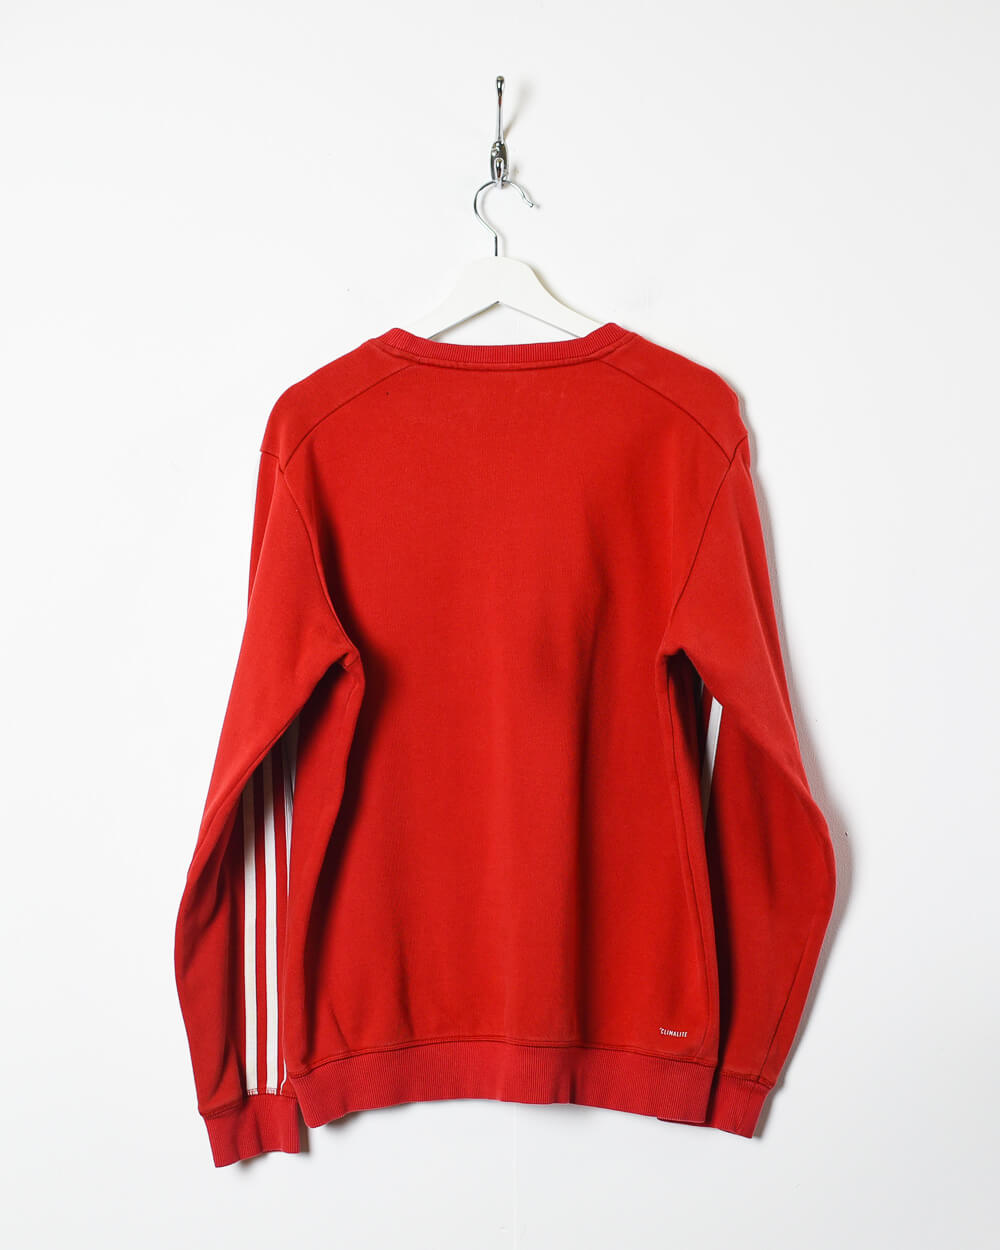 Red Adidas 2013 FC Bayern Munich Training Sweatshirt - Medium